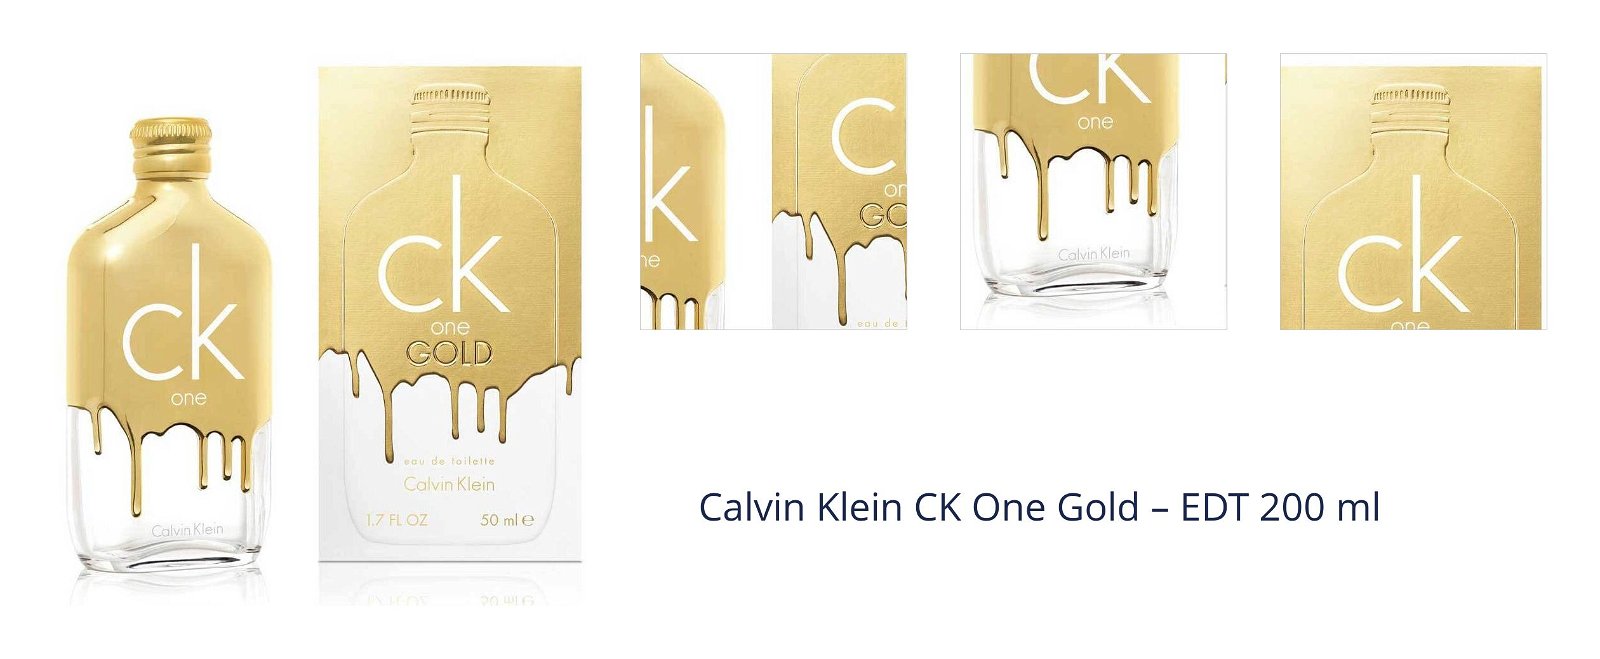 Calvin Klein CK One Gold – EDT 200 ml 1